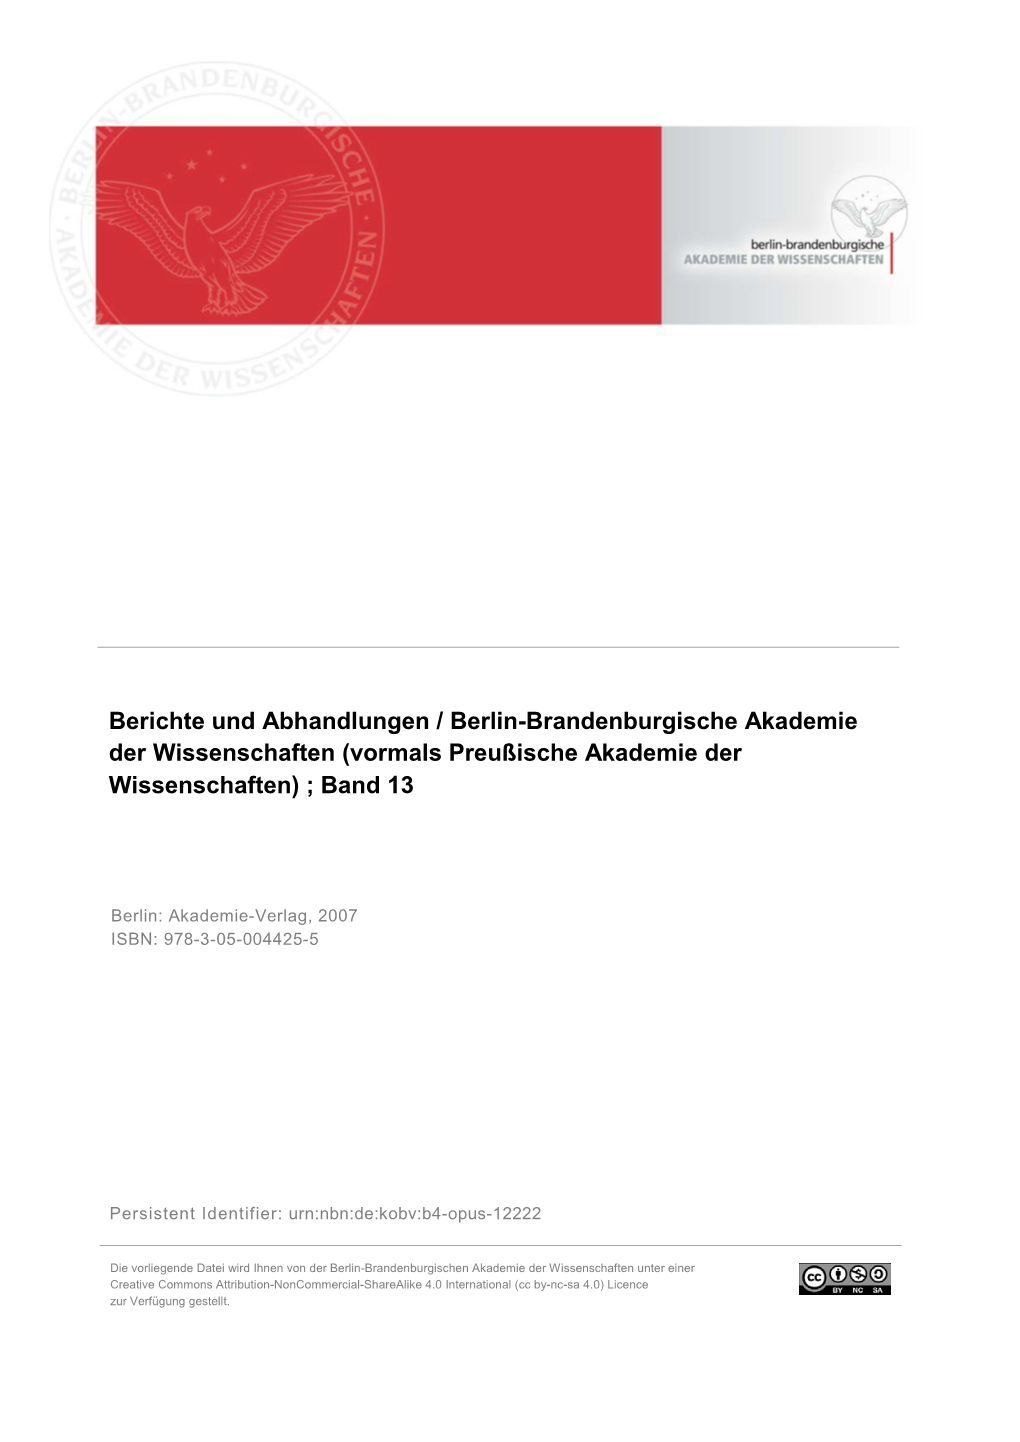 Berichte Und Abhandlungen / Berlin-Brandenburgische Akademie Der Wissenschaften (Vormals Preußische Akademie Der Wissenschaften) ; Band 13